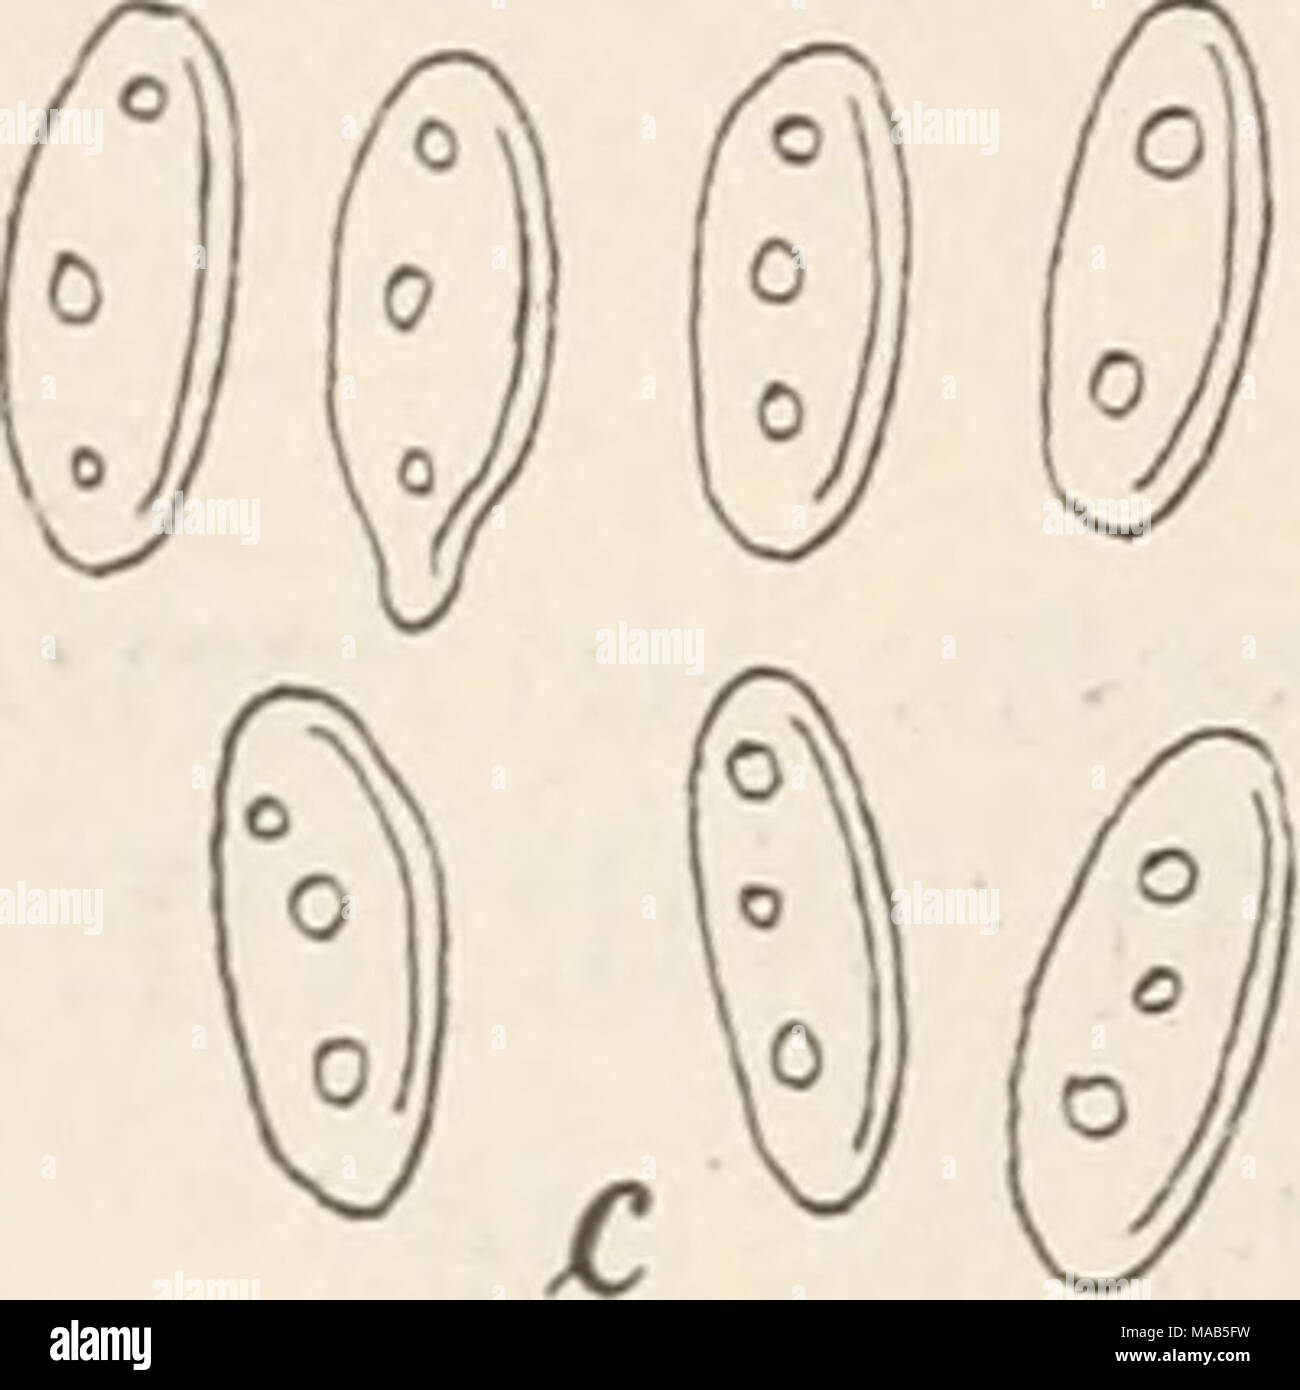 . Dr. L. Rabenhorst's Kryptogamen-Flora von Deutschland, Oesterreich und der Schweiz . 4055. Ol. Robergei Desm., Ann. Sc. nat. 1853, XX. p. 214. Sacc, Fung. ital. tab. 1049; Syll. III. p. 712. Exs. Allesch. et Schnabl, Fungi bavarici No. 687. Krieger, Fungi saxonici No. 1044. Flecken fast kreisförmig, ocherfarbig, ziemlich gross; Sporen- lager wenige, klein, dunkelocherfarbig, von der Oberhaut bedeckt, Gloeo sporium Kobergei Desm. a. Ein Blattstück von Carpinus Betulus mit dem Pilze in natürlicher Grösse b. Ein sehr stark vergrösserter Theil des Hymeniums mit Sporenträgern und Sporen. c. Sehr  Stock Photo